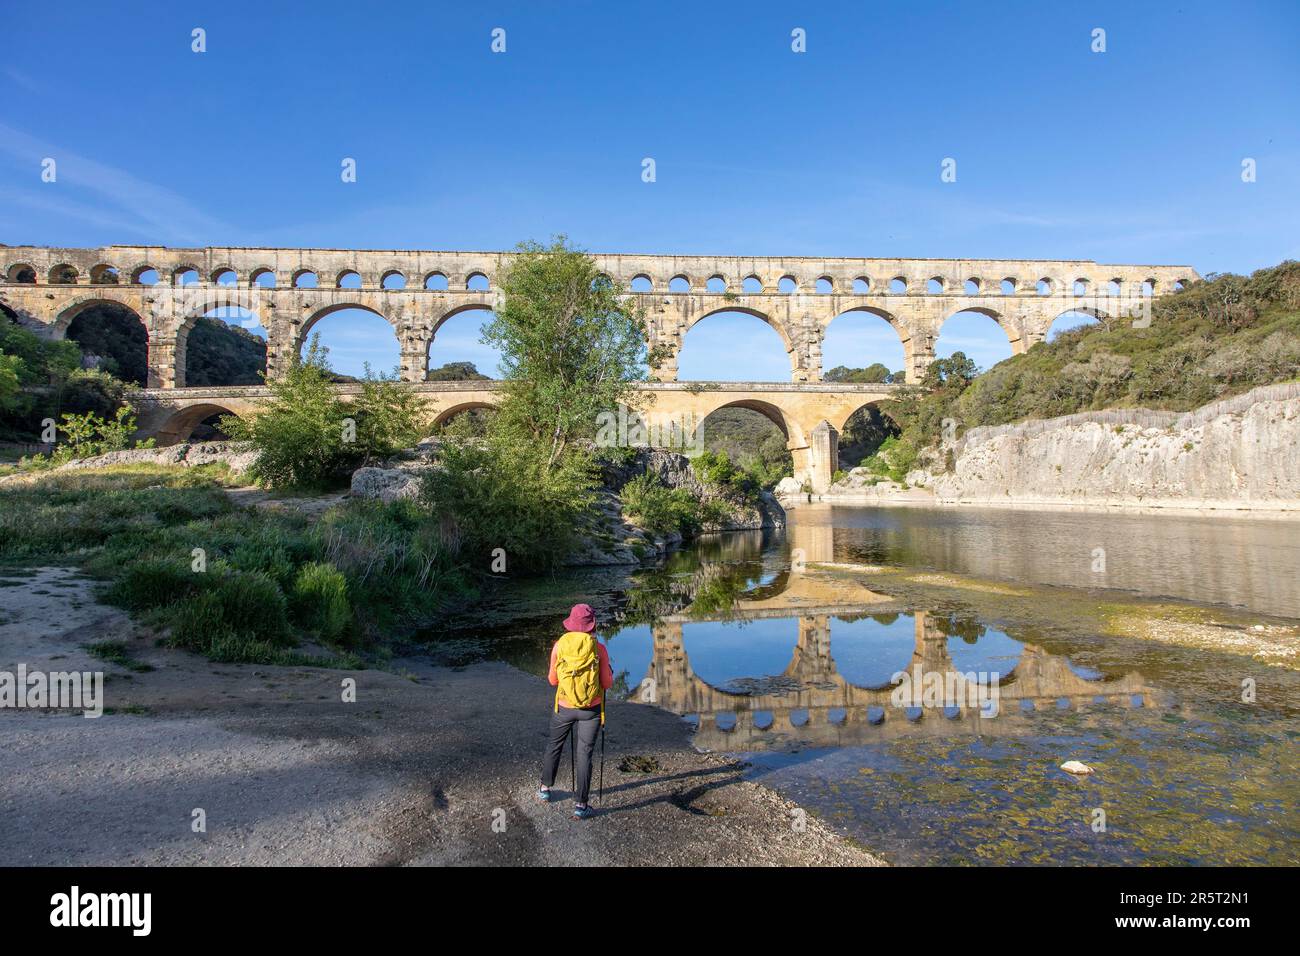 Frankreich, Gard, Vers-Pont-du-Gard, der Pont du Gard, der von der UNESCO zum Weltkulturerbe erklärt wurde, große Stätte Frankreichs, römisches Aquädukt aus dem 1. Jahrhundert, das über den Gardon ragt Stockfoto